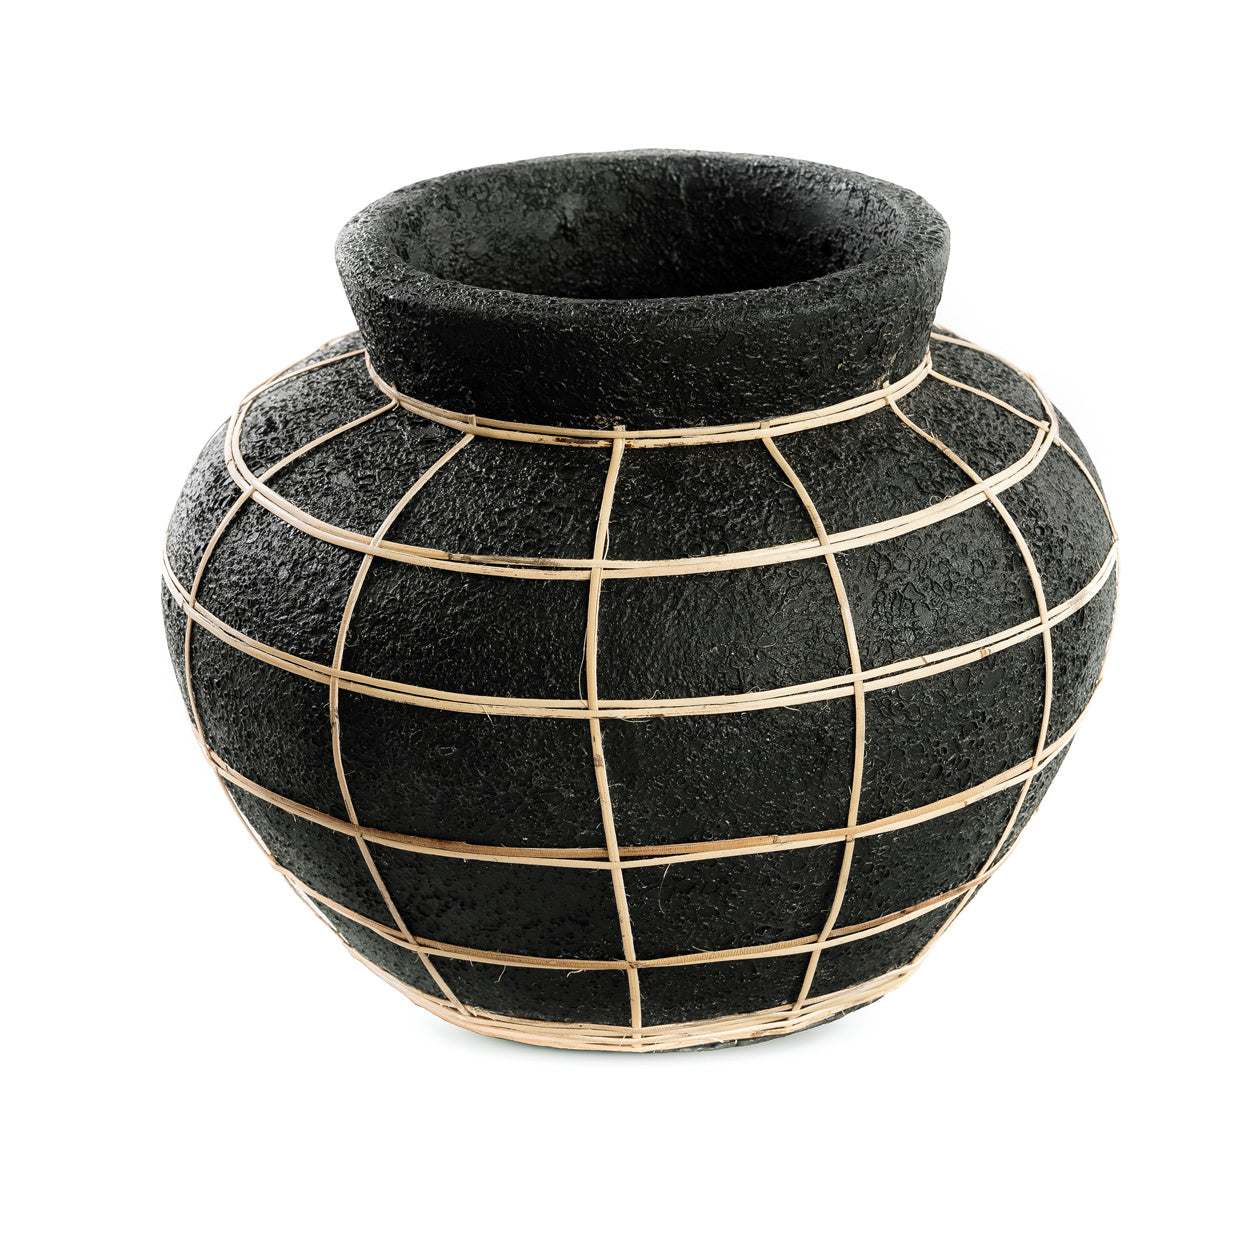 THE BELLY Vase - Black Natural M